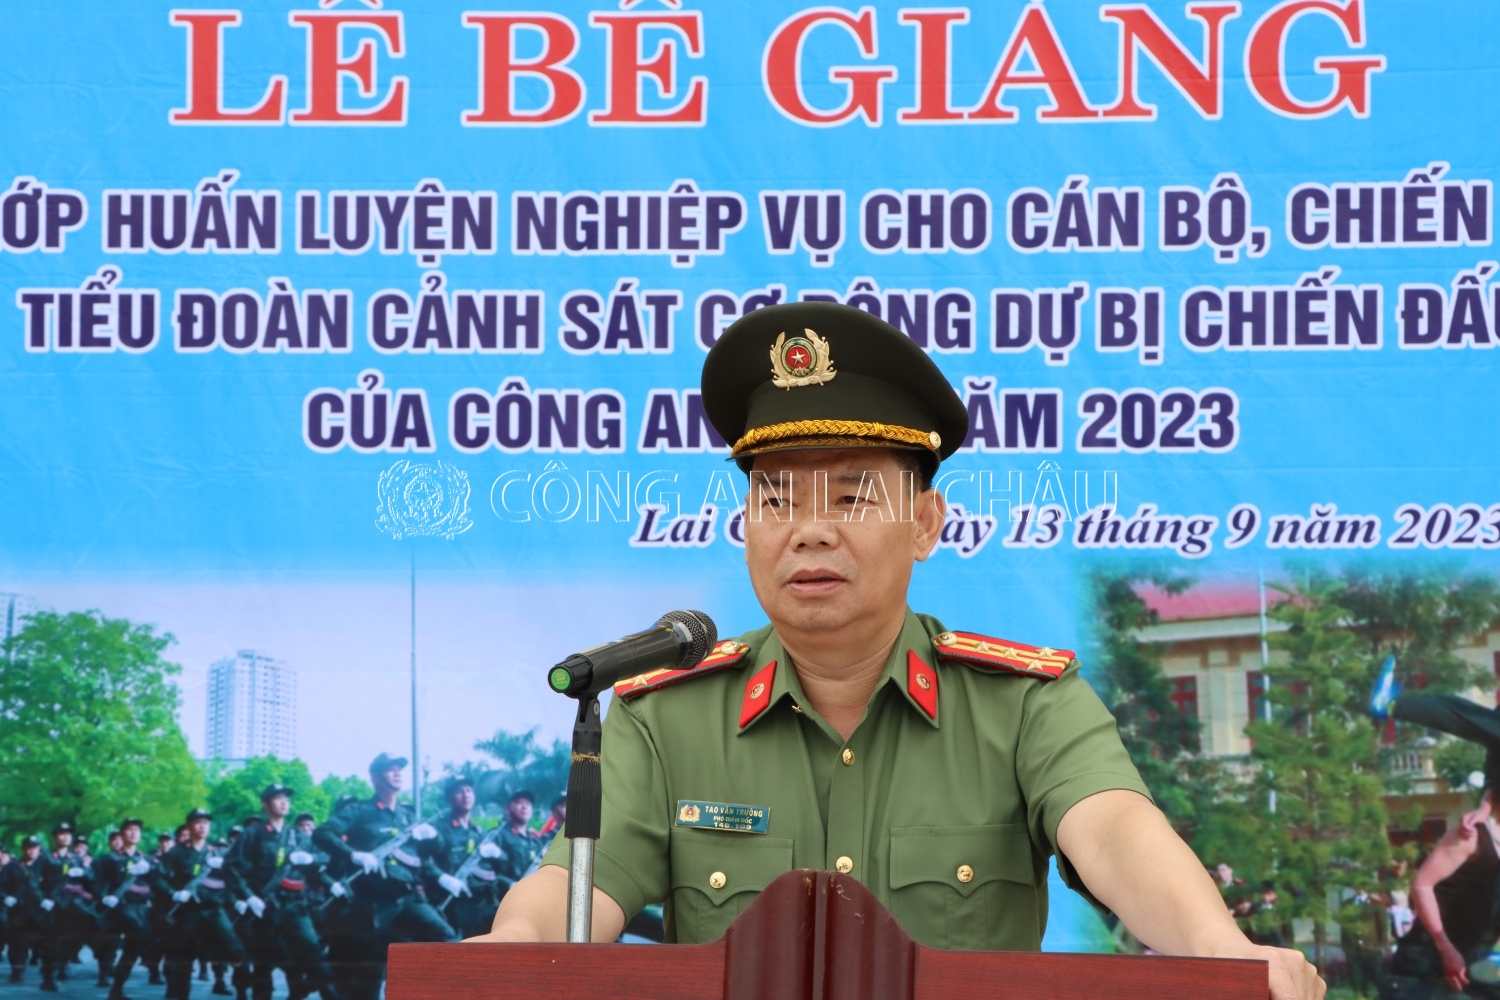 Đại tá Tao Văn Trường - Phó giám đốc Công an tỉnh phát biểu tại Lễ bế giảng